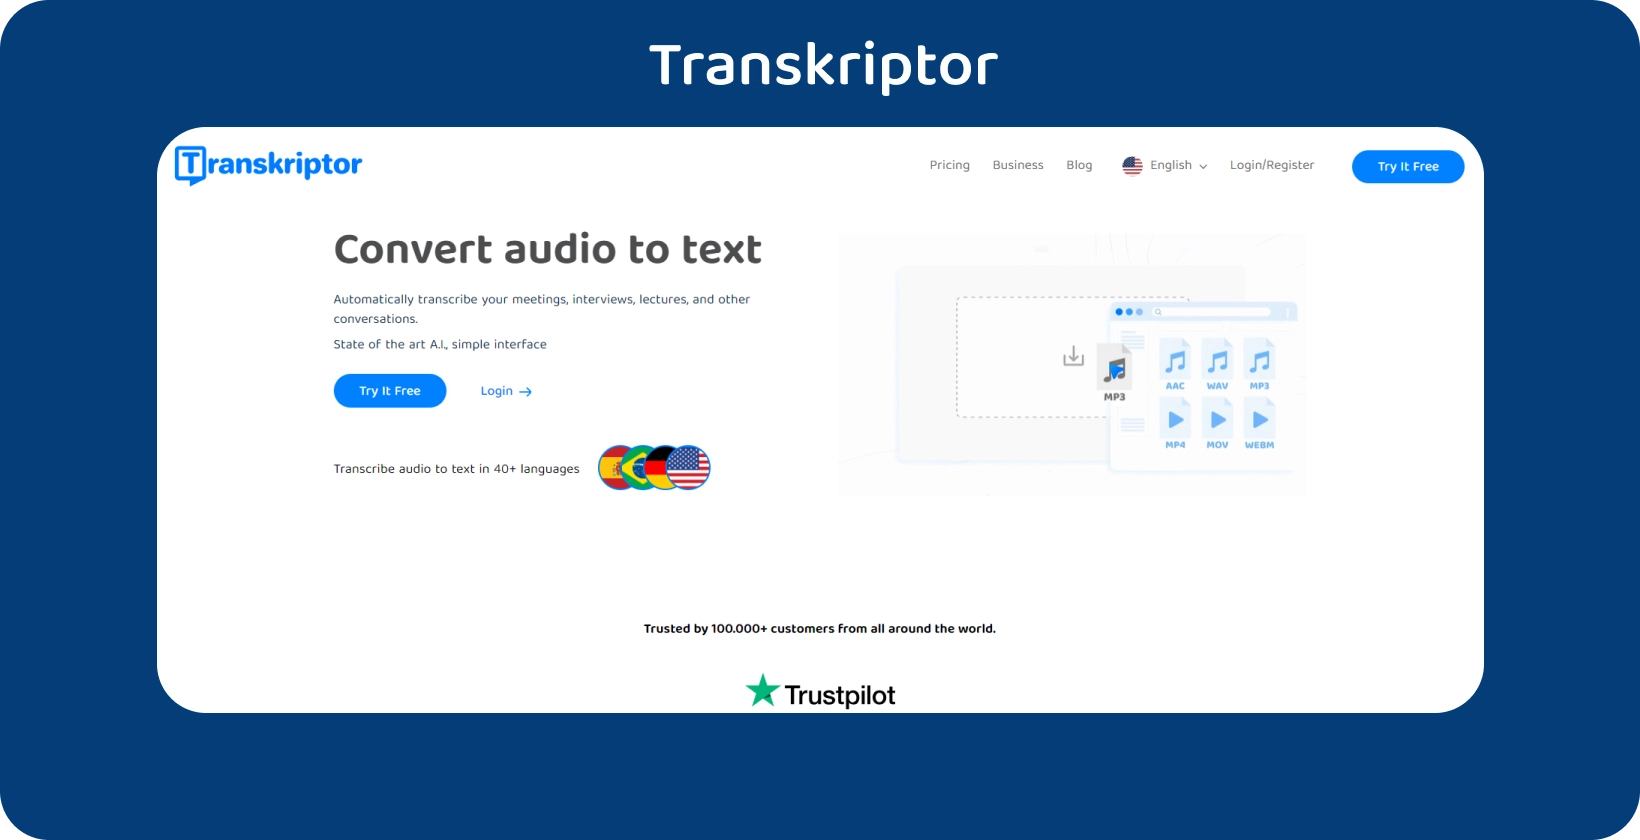 Домашняя страница Transkriptor с четким призывом к действию, предлагающая услуги транскрипции аудио в текст.